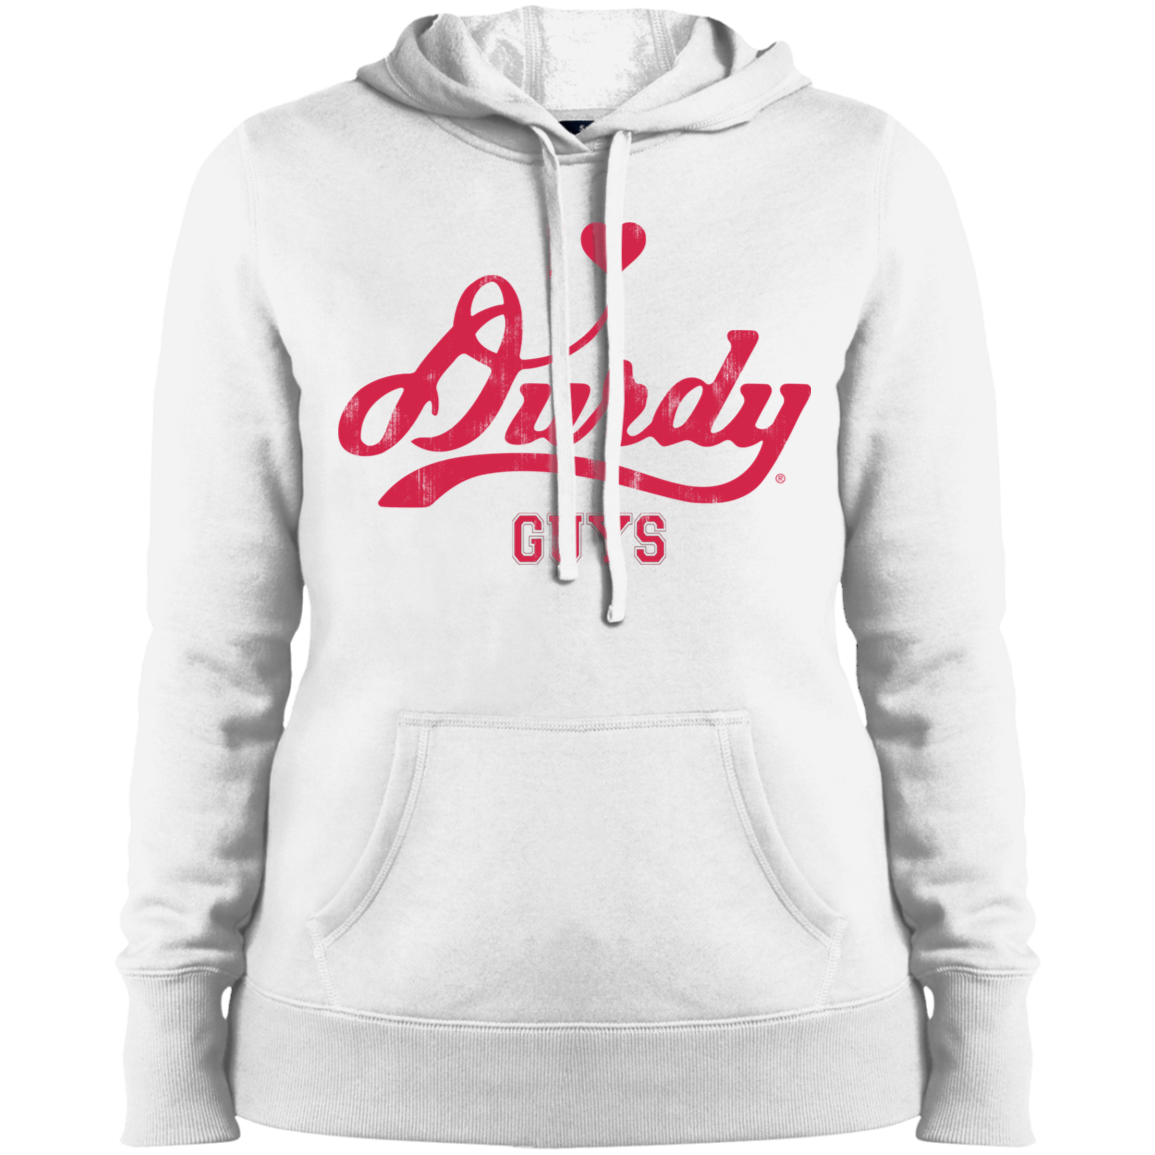 Love Durdy Guys Sport-Tek Ladies' Pullover Hooded Sweatshirt